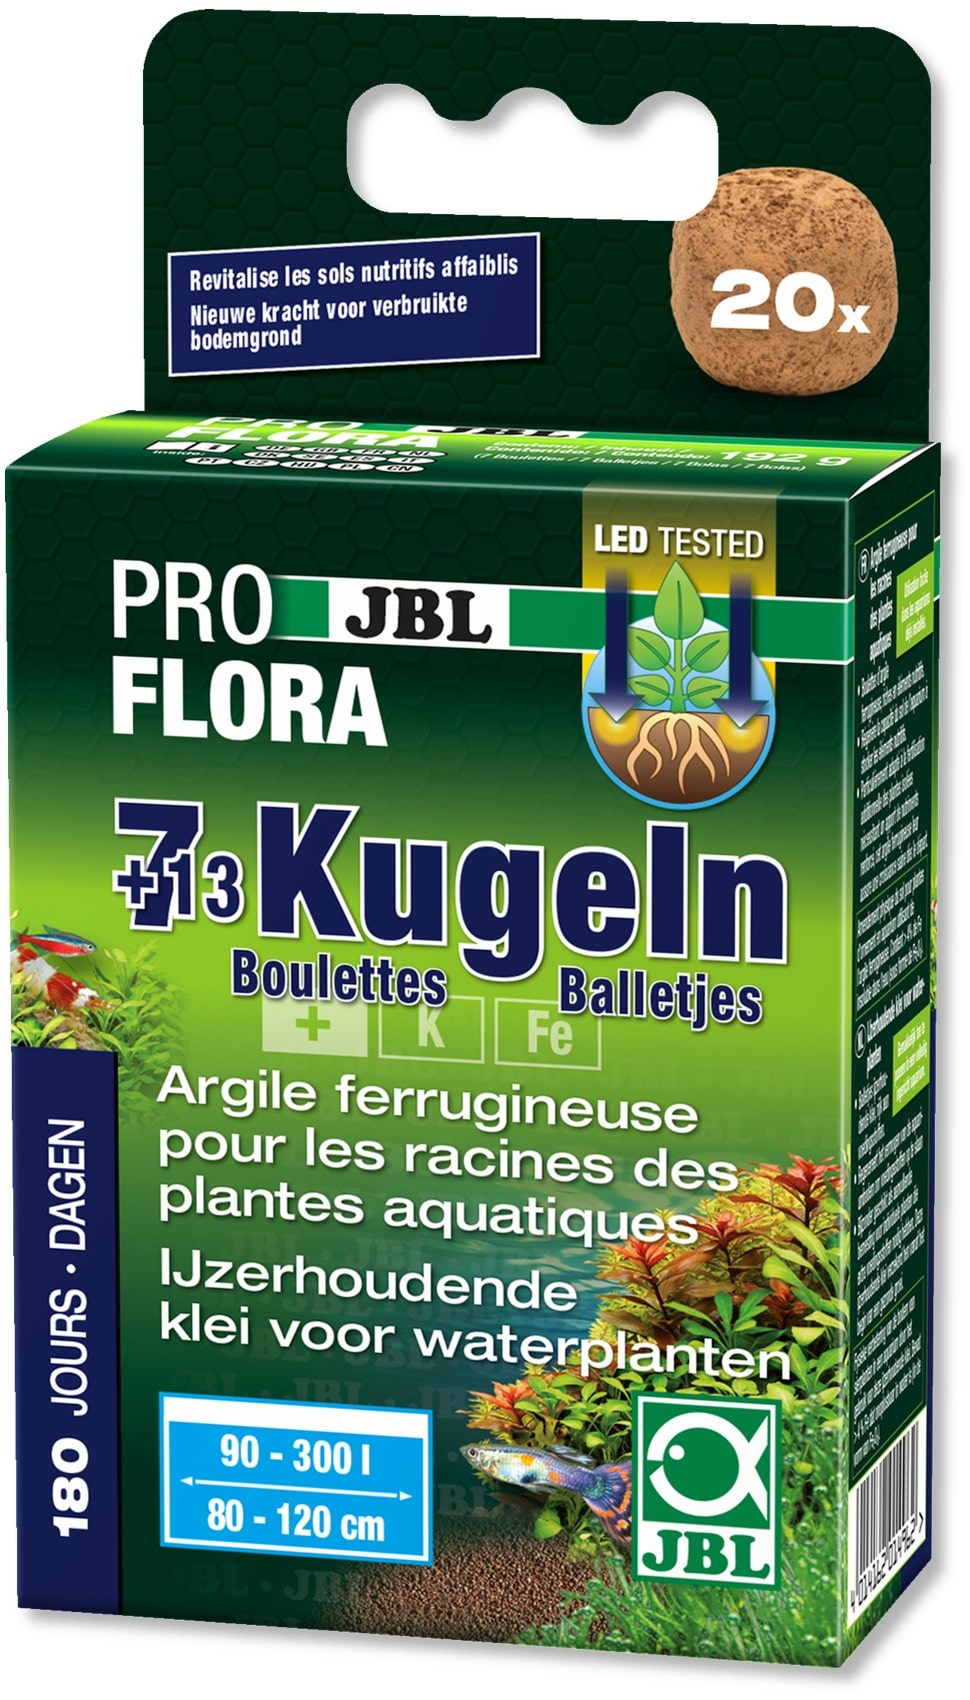 JBL 7 + 13 boulettes fertilisantes pour les racines des plantes aquatiques